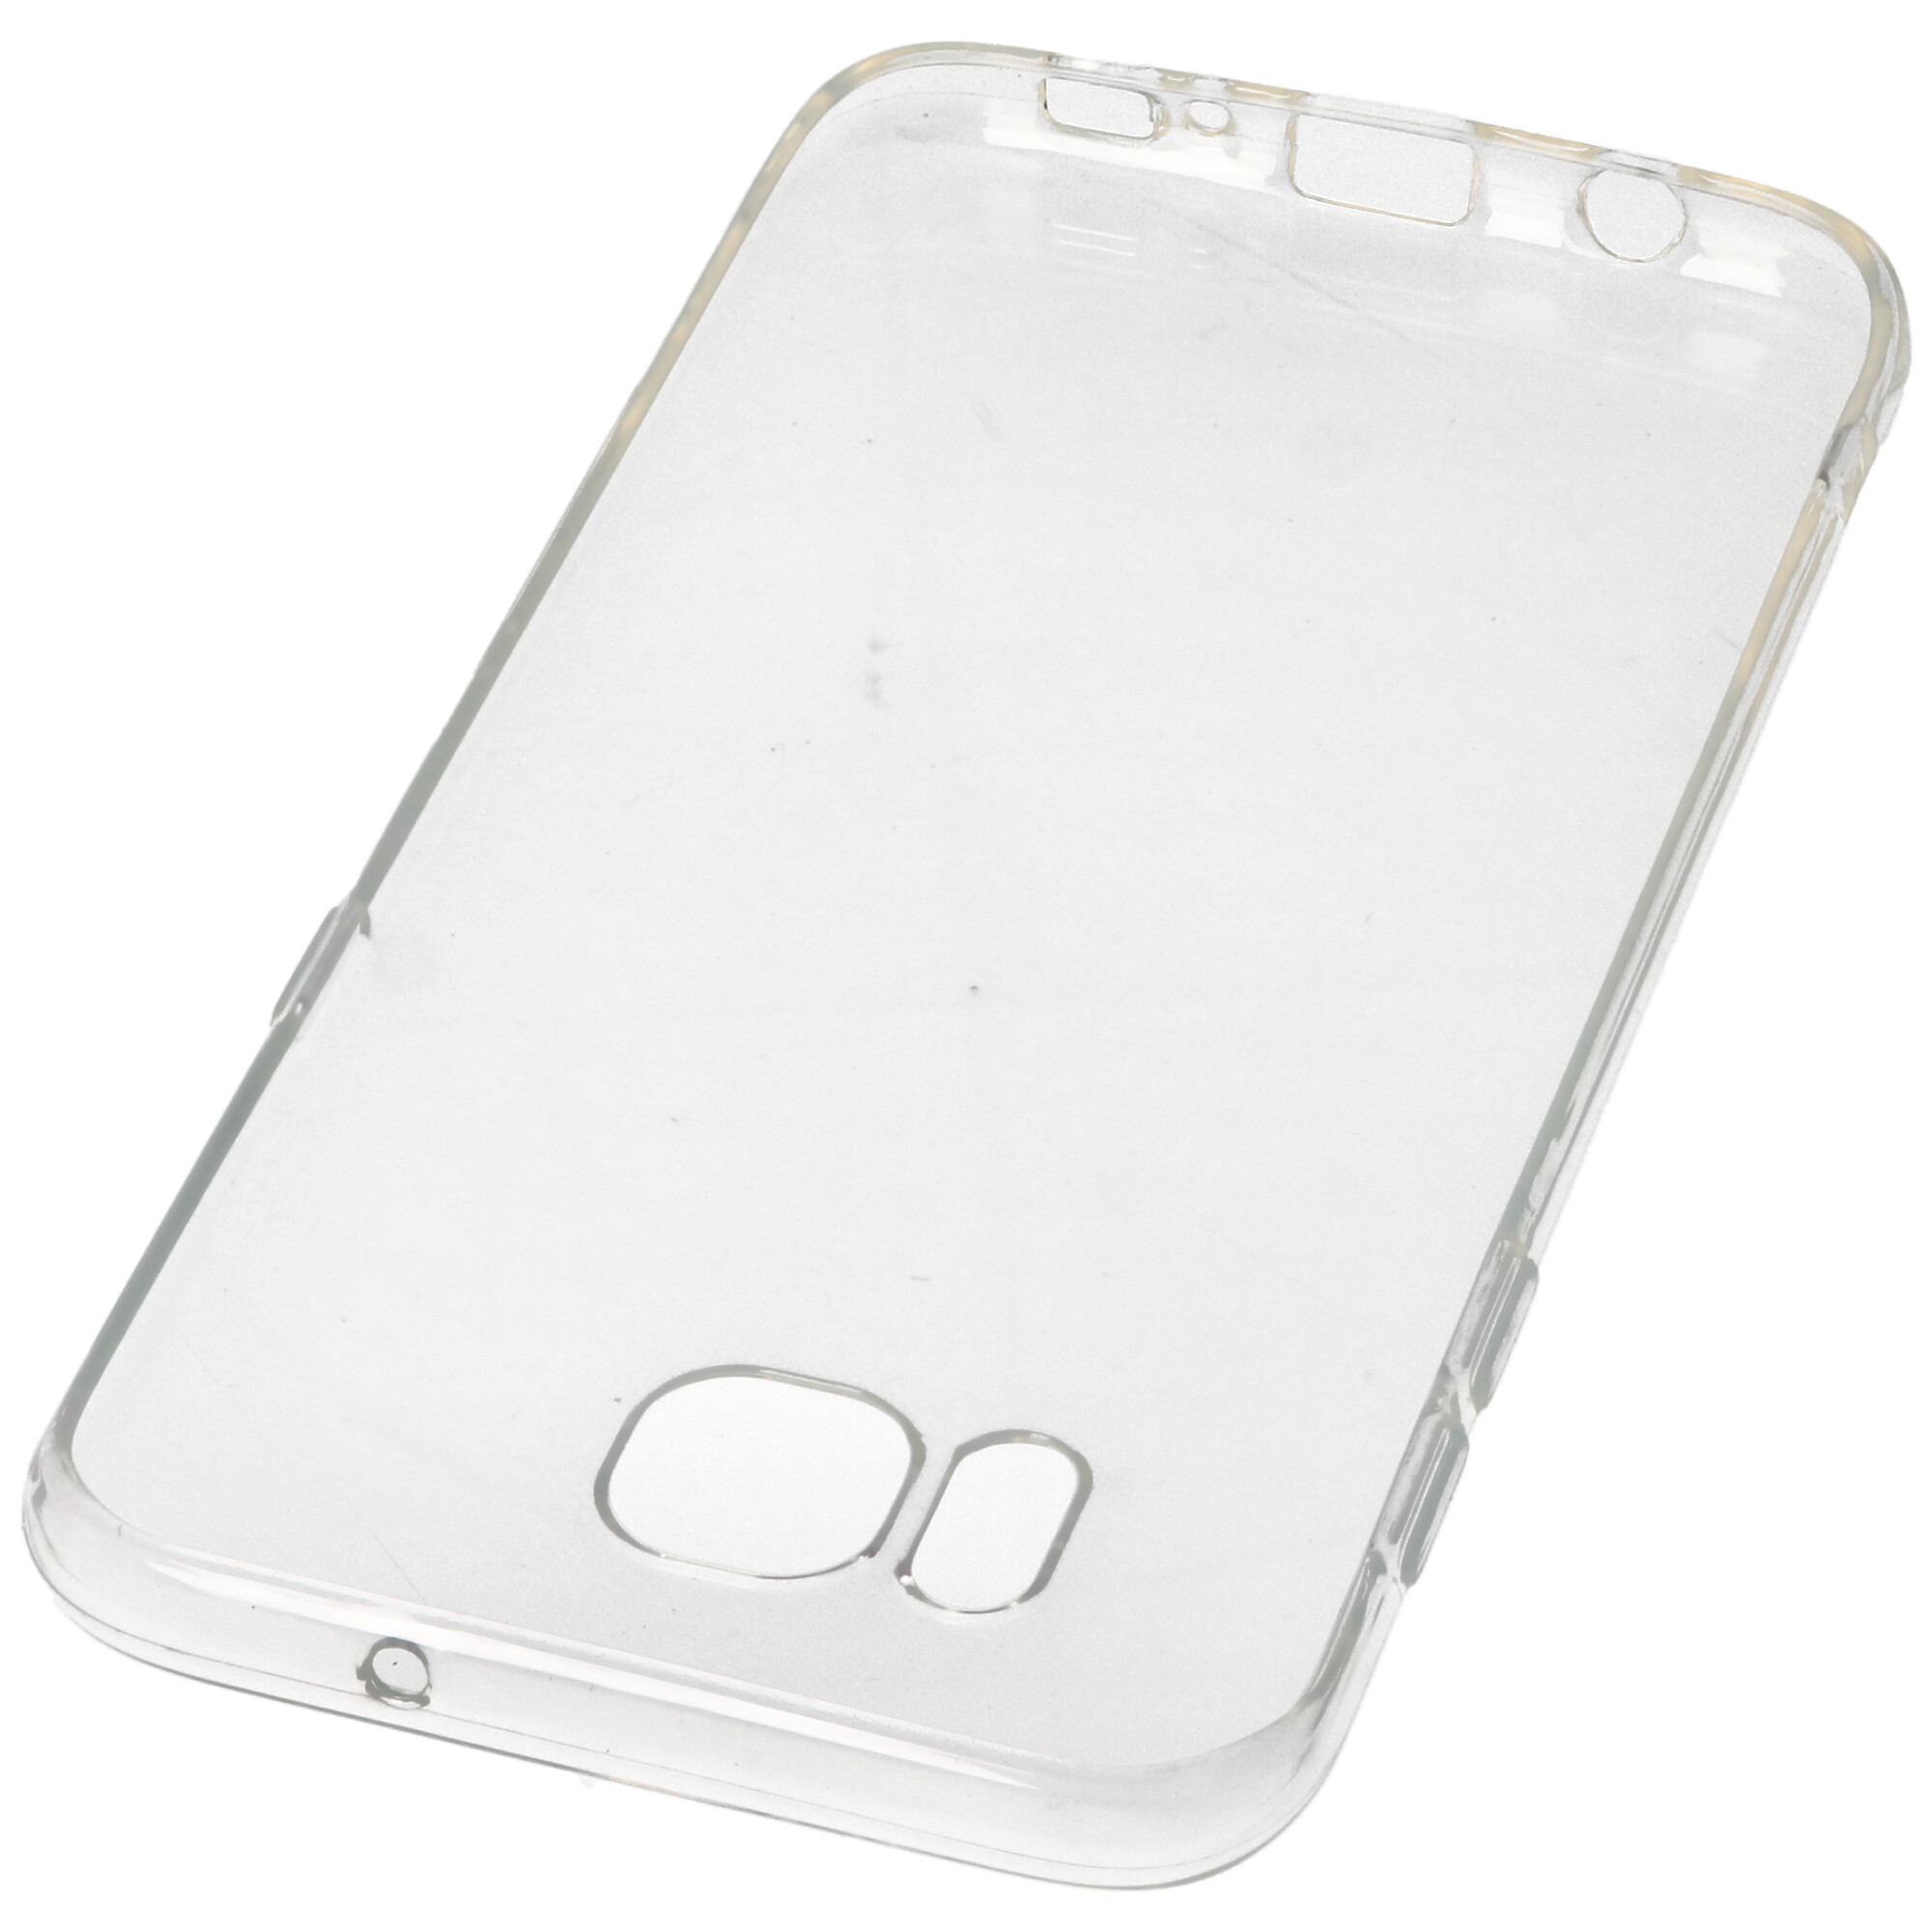 Hülle passend für Samsung Galaxy S7 Edge - transparente Schutzhülle, Anti-Gelb Luftkissen Fallschutz Silikon Handyhülle robustes TPU Case